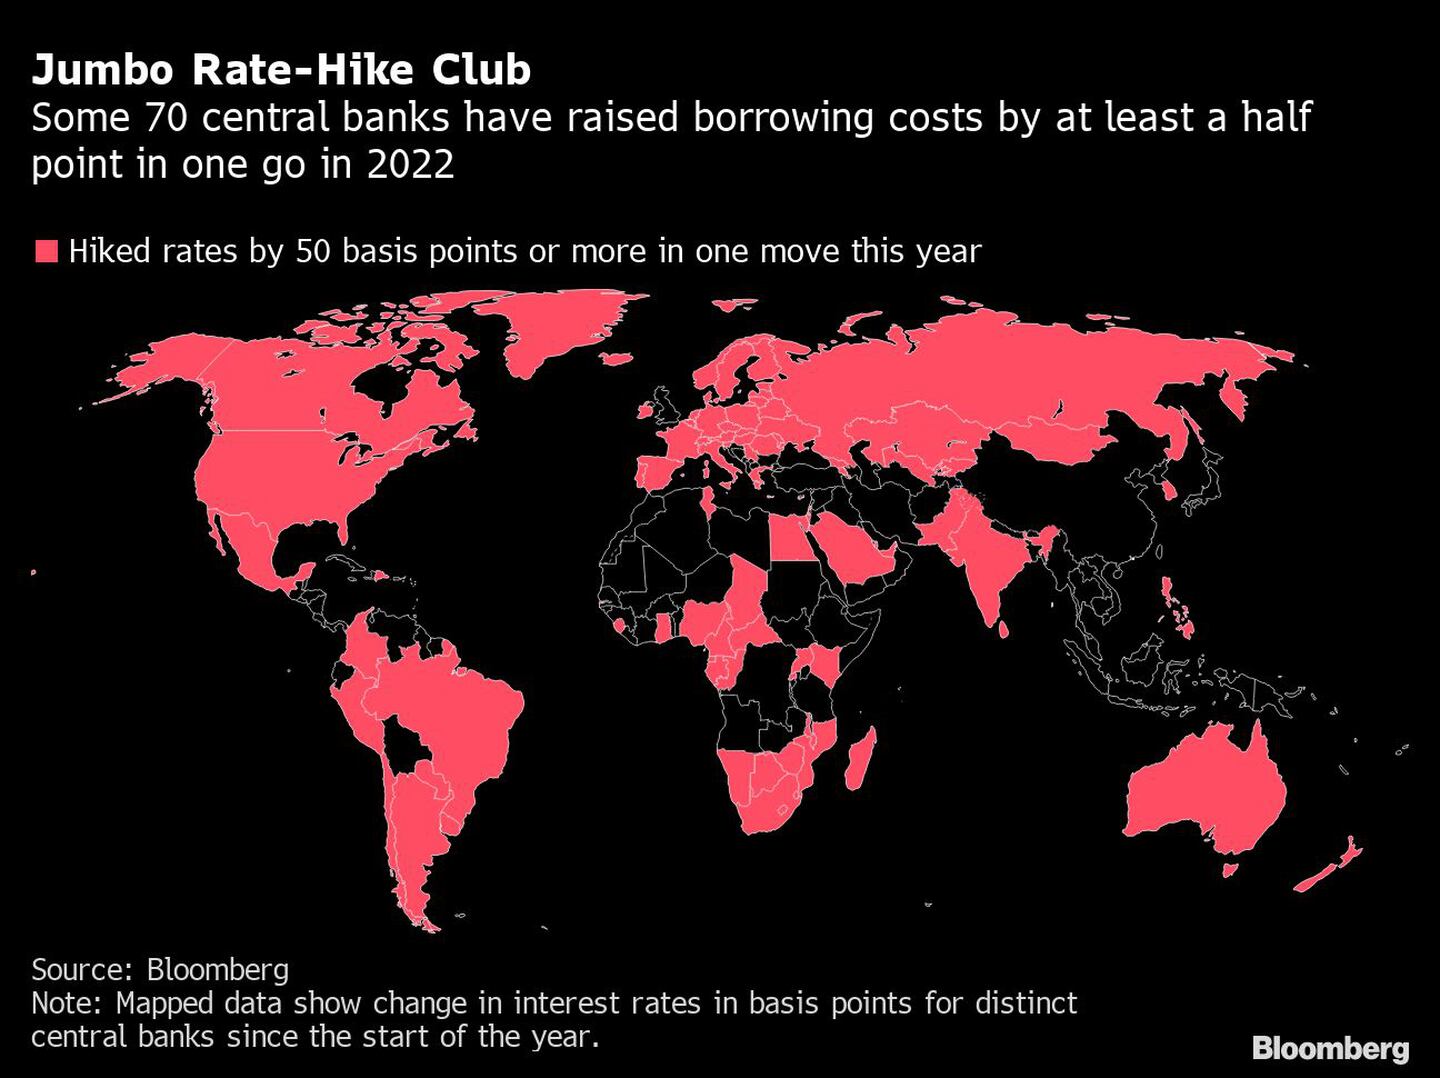 Alrededor de 70 bancos centrales han subido los costos de endeudamiento en al menos 50 puntos básicos en una sola reunión en 2022dfd